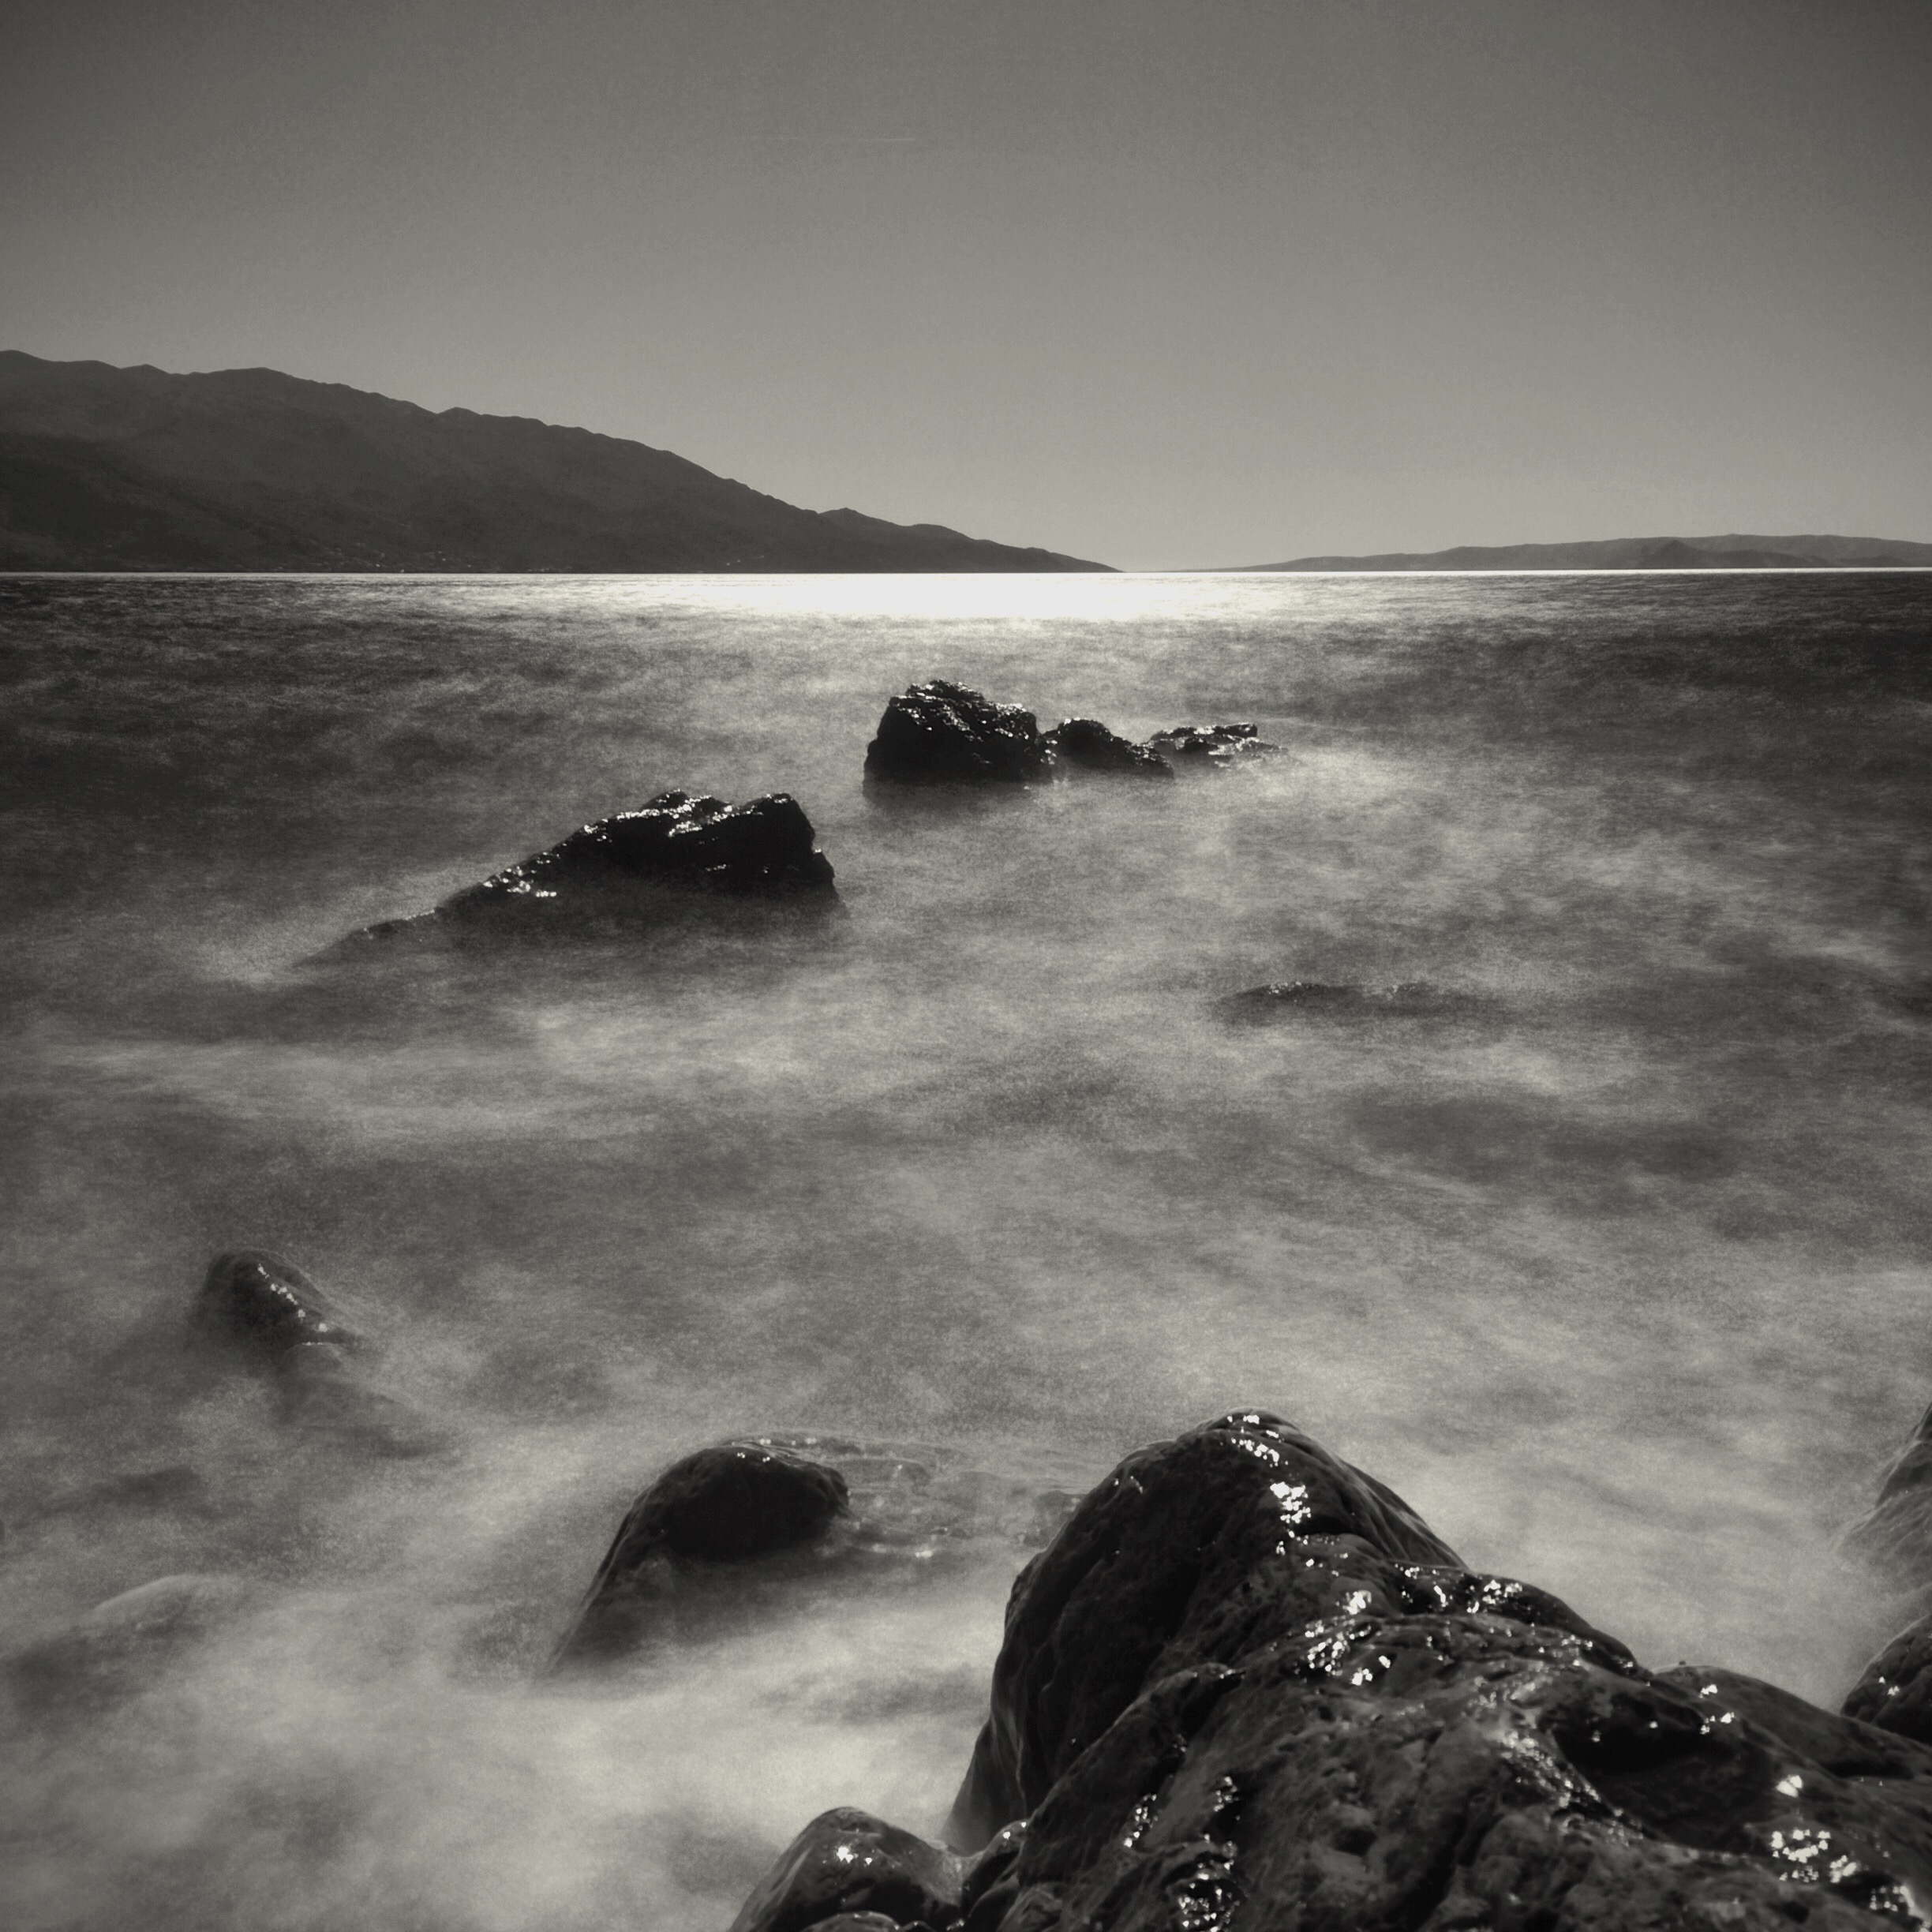 Fekete-fehér fénykép az Adriai tengerben lévő kövekről